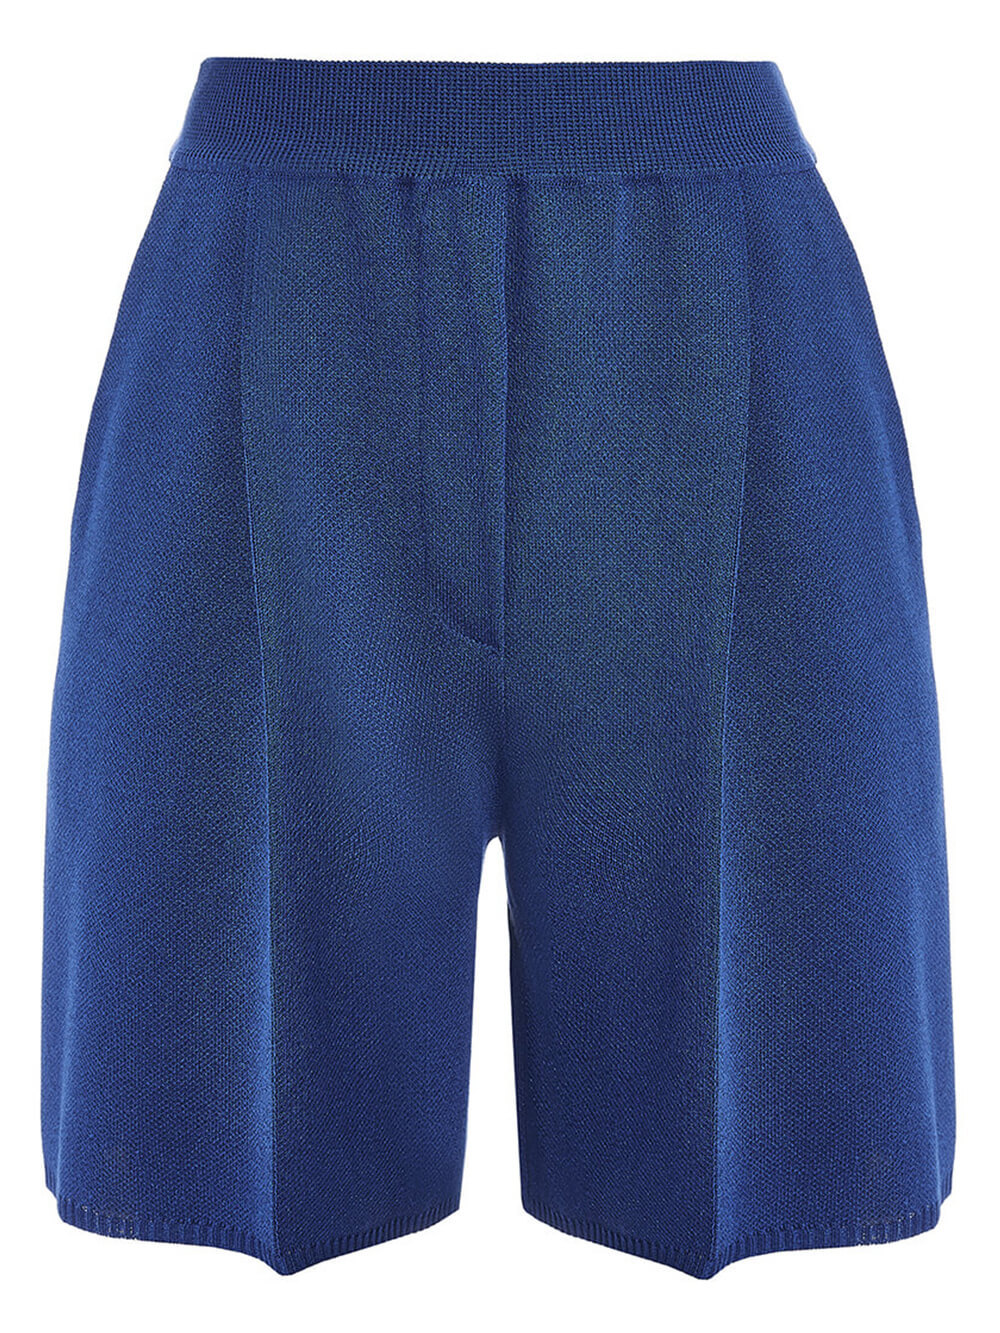 Женские шорты синего цвета из вискозы